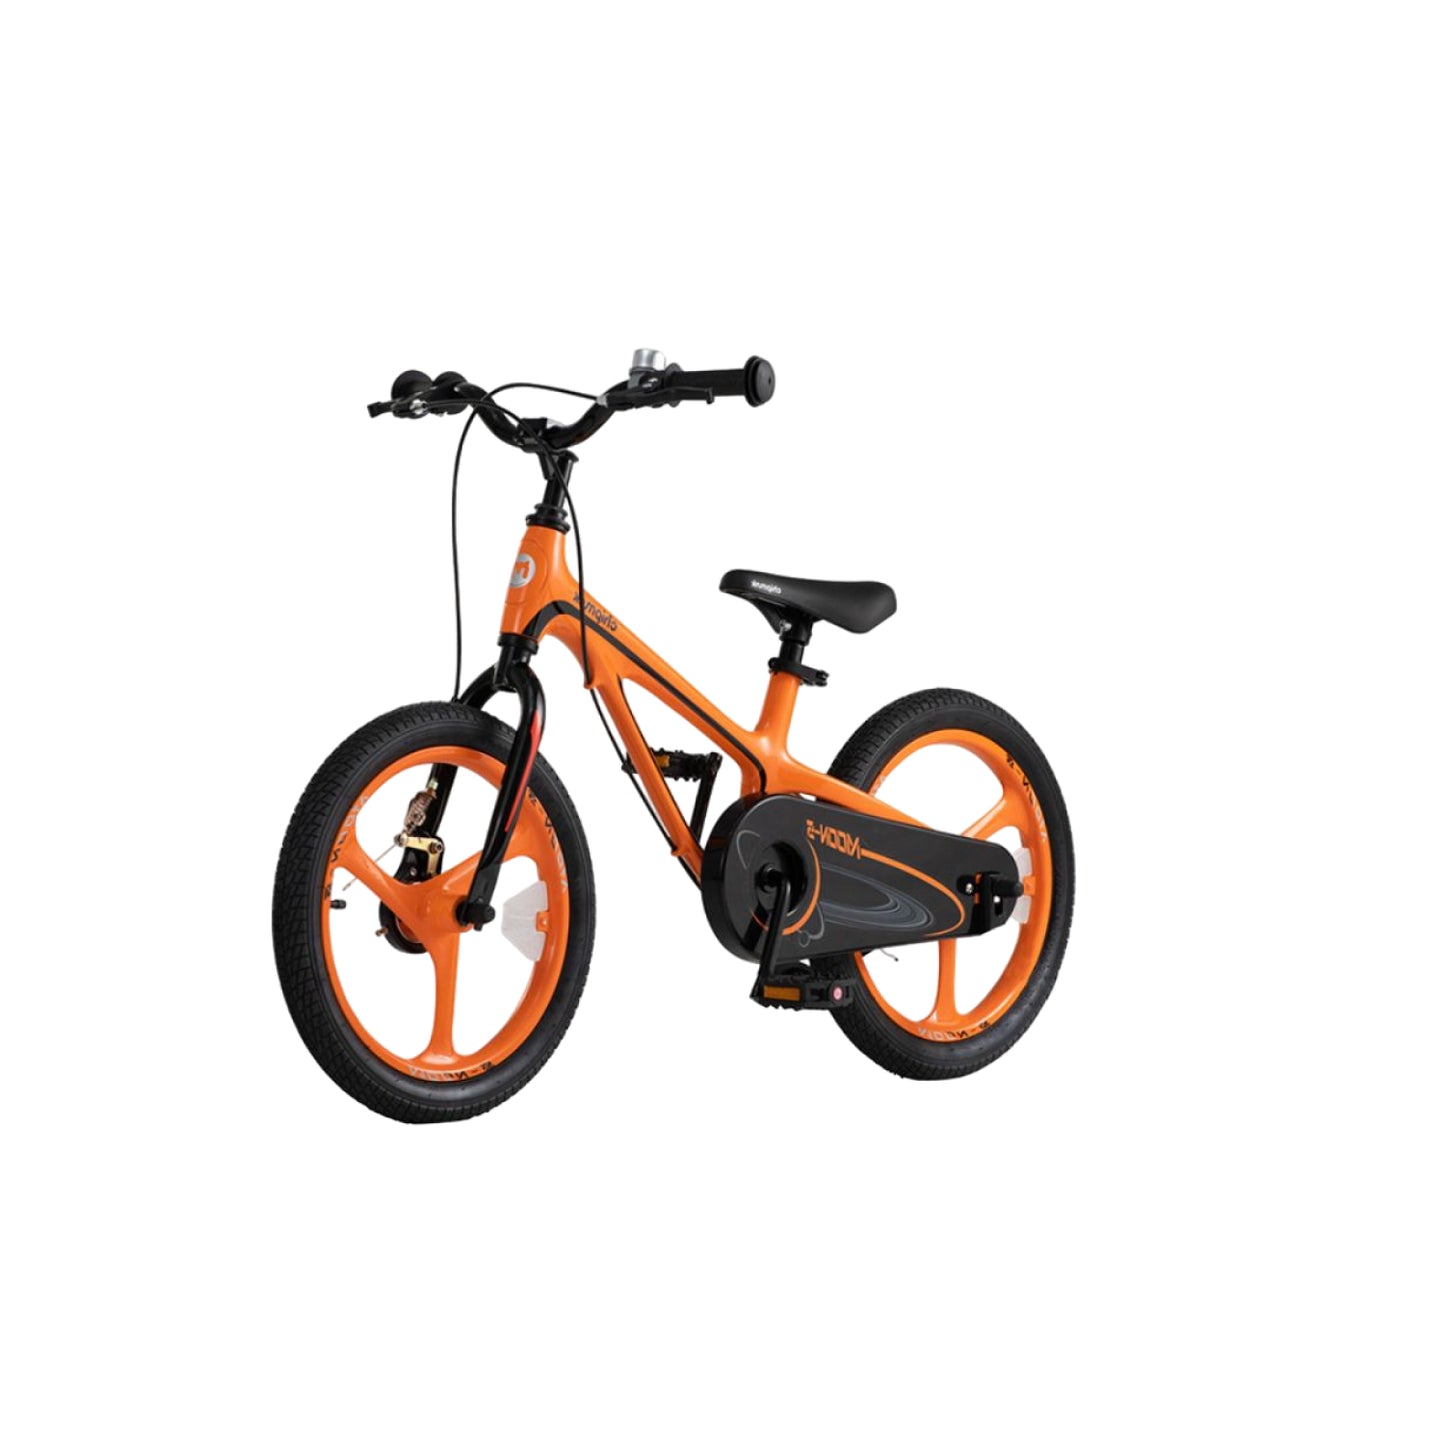 Chipmunk Moon 18 inch orange children's bicycle CM18-5P-OR